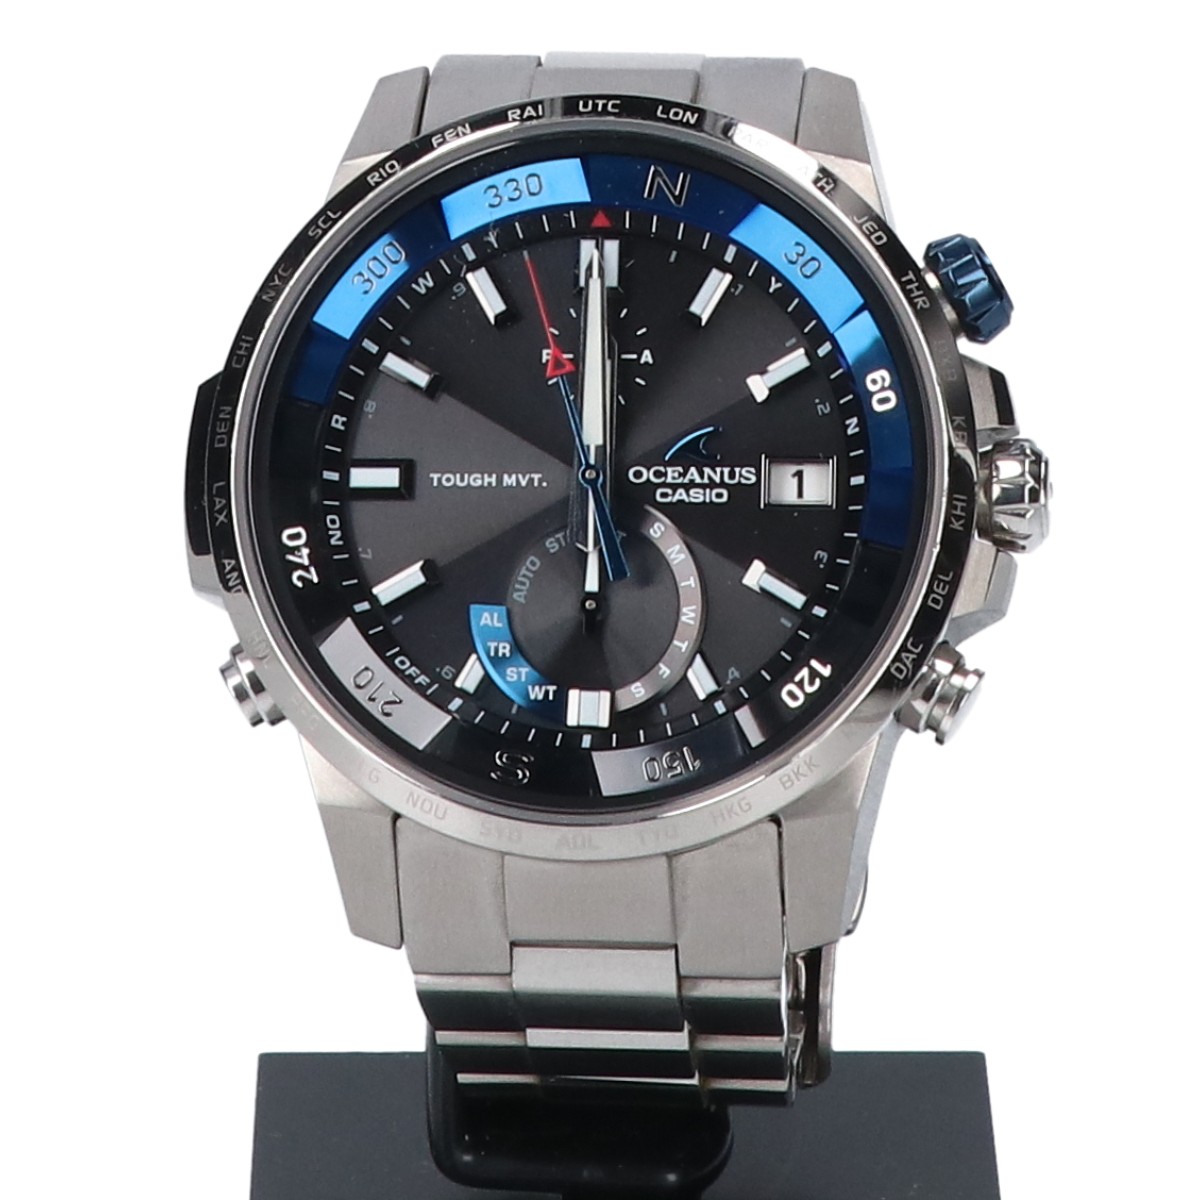 カシオのOCW-P1000-1AJF オシアナスカシャロ マルチバンド6 タフソーラー電波腕時計 の買取実績です。